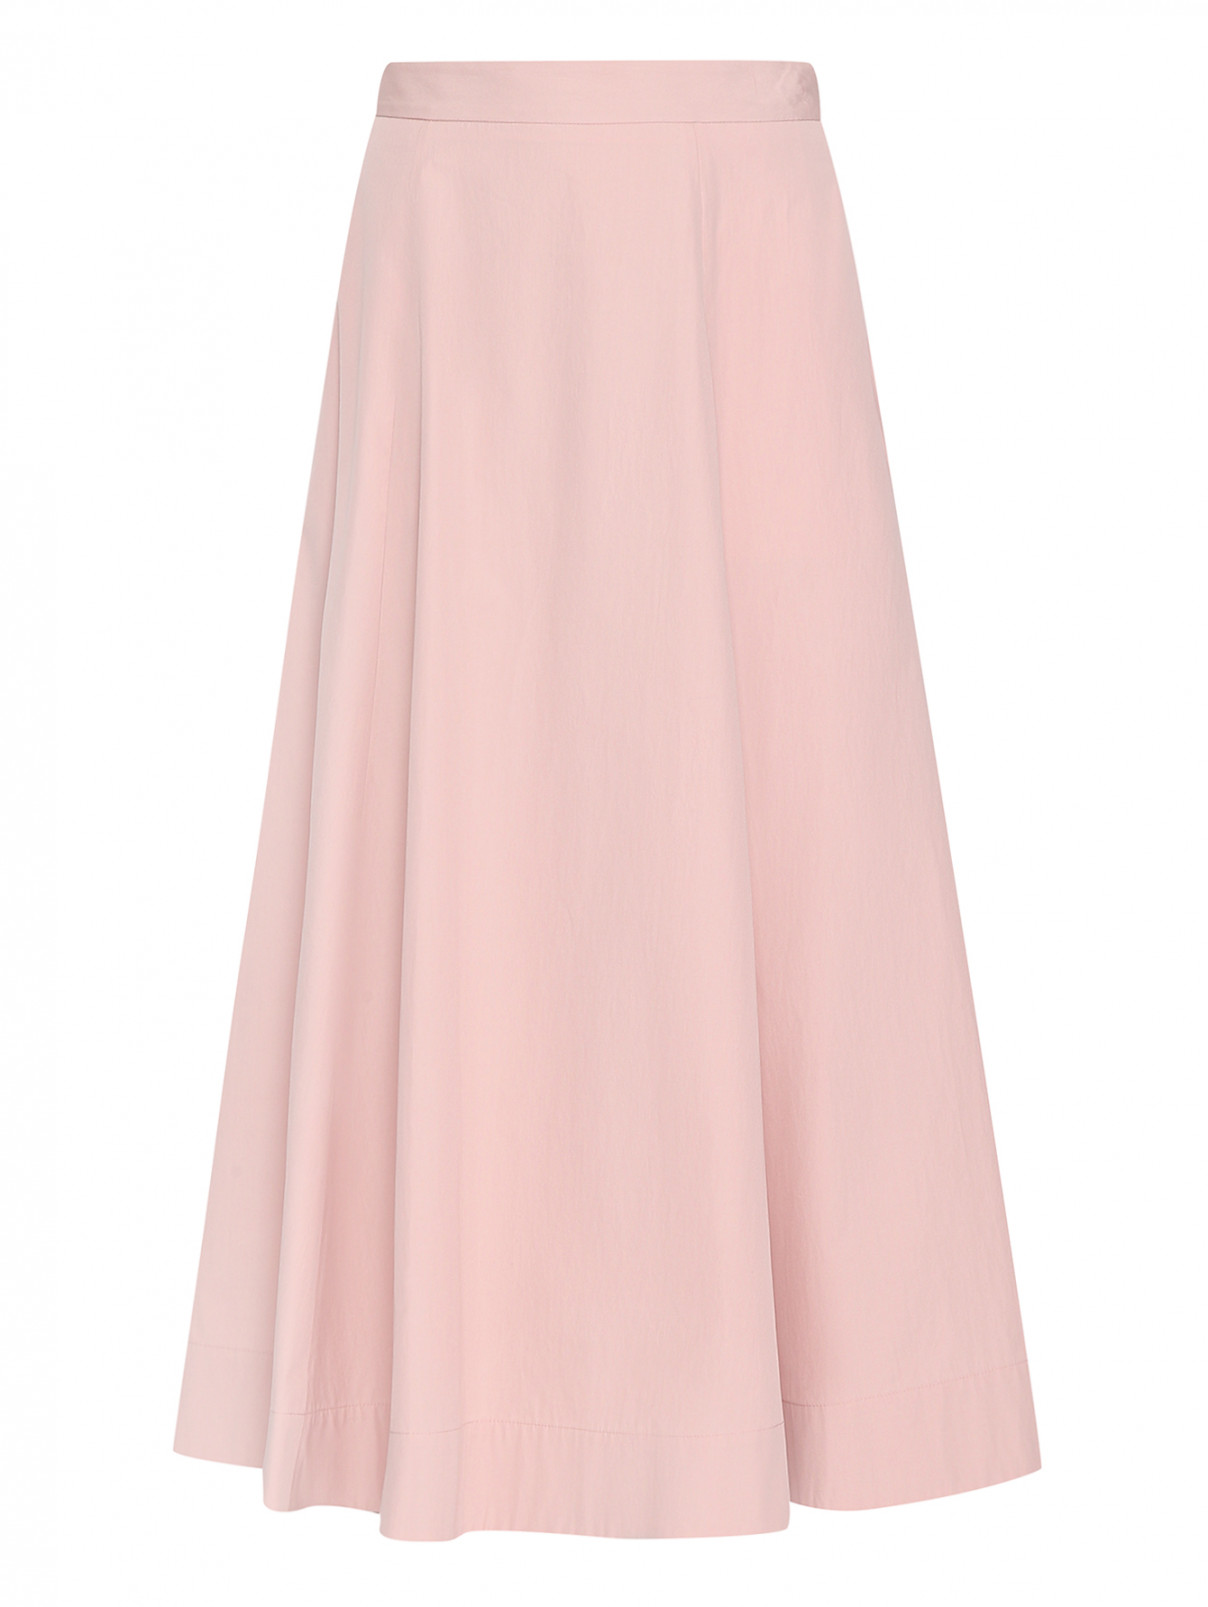 Юбка-миди из хлопка с карманами Lorena Antoniazzi  –  Общий вид  – Цвет:  Розовый